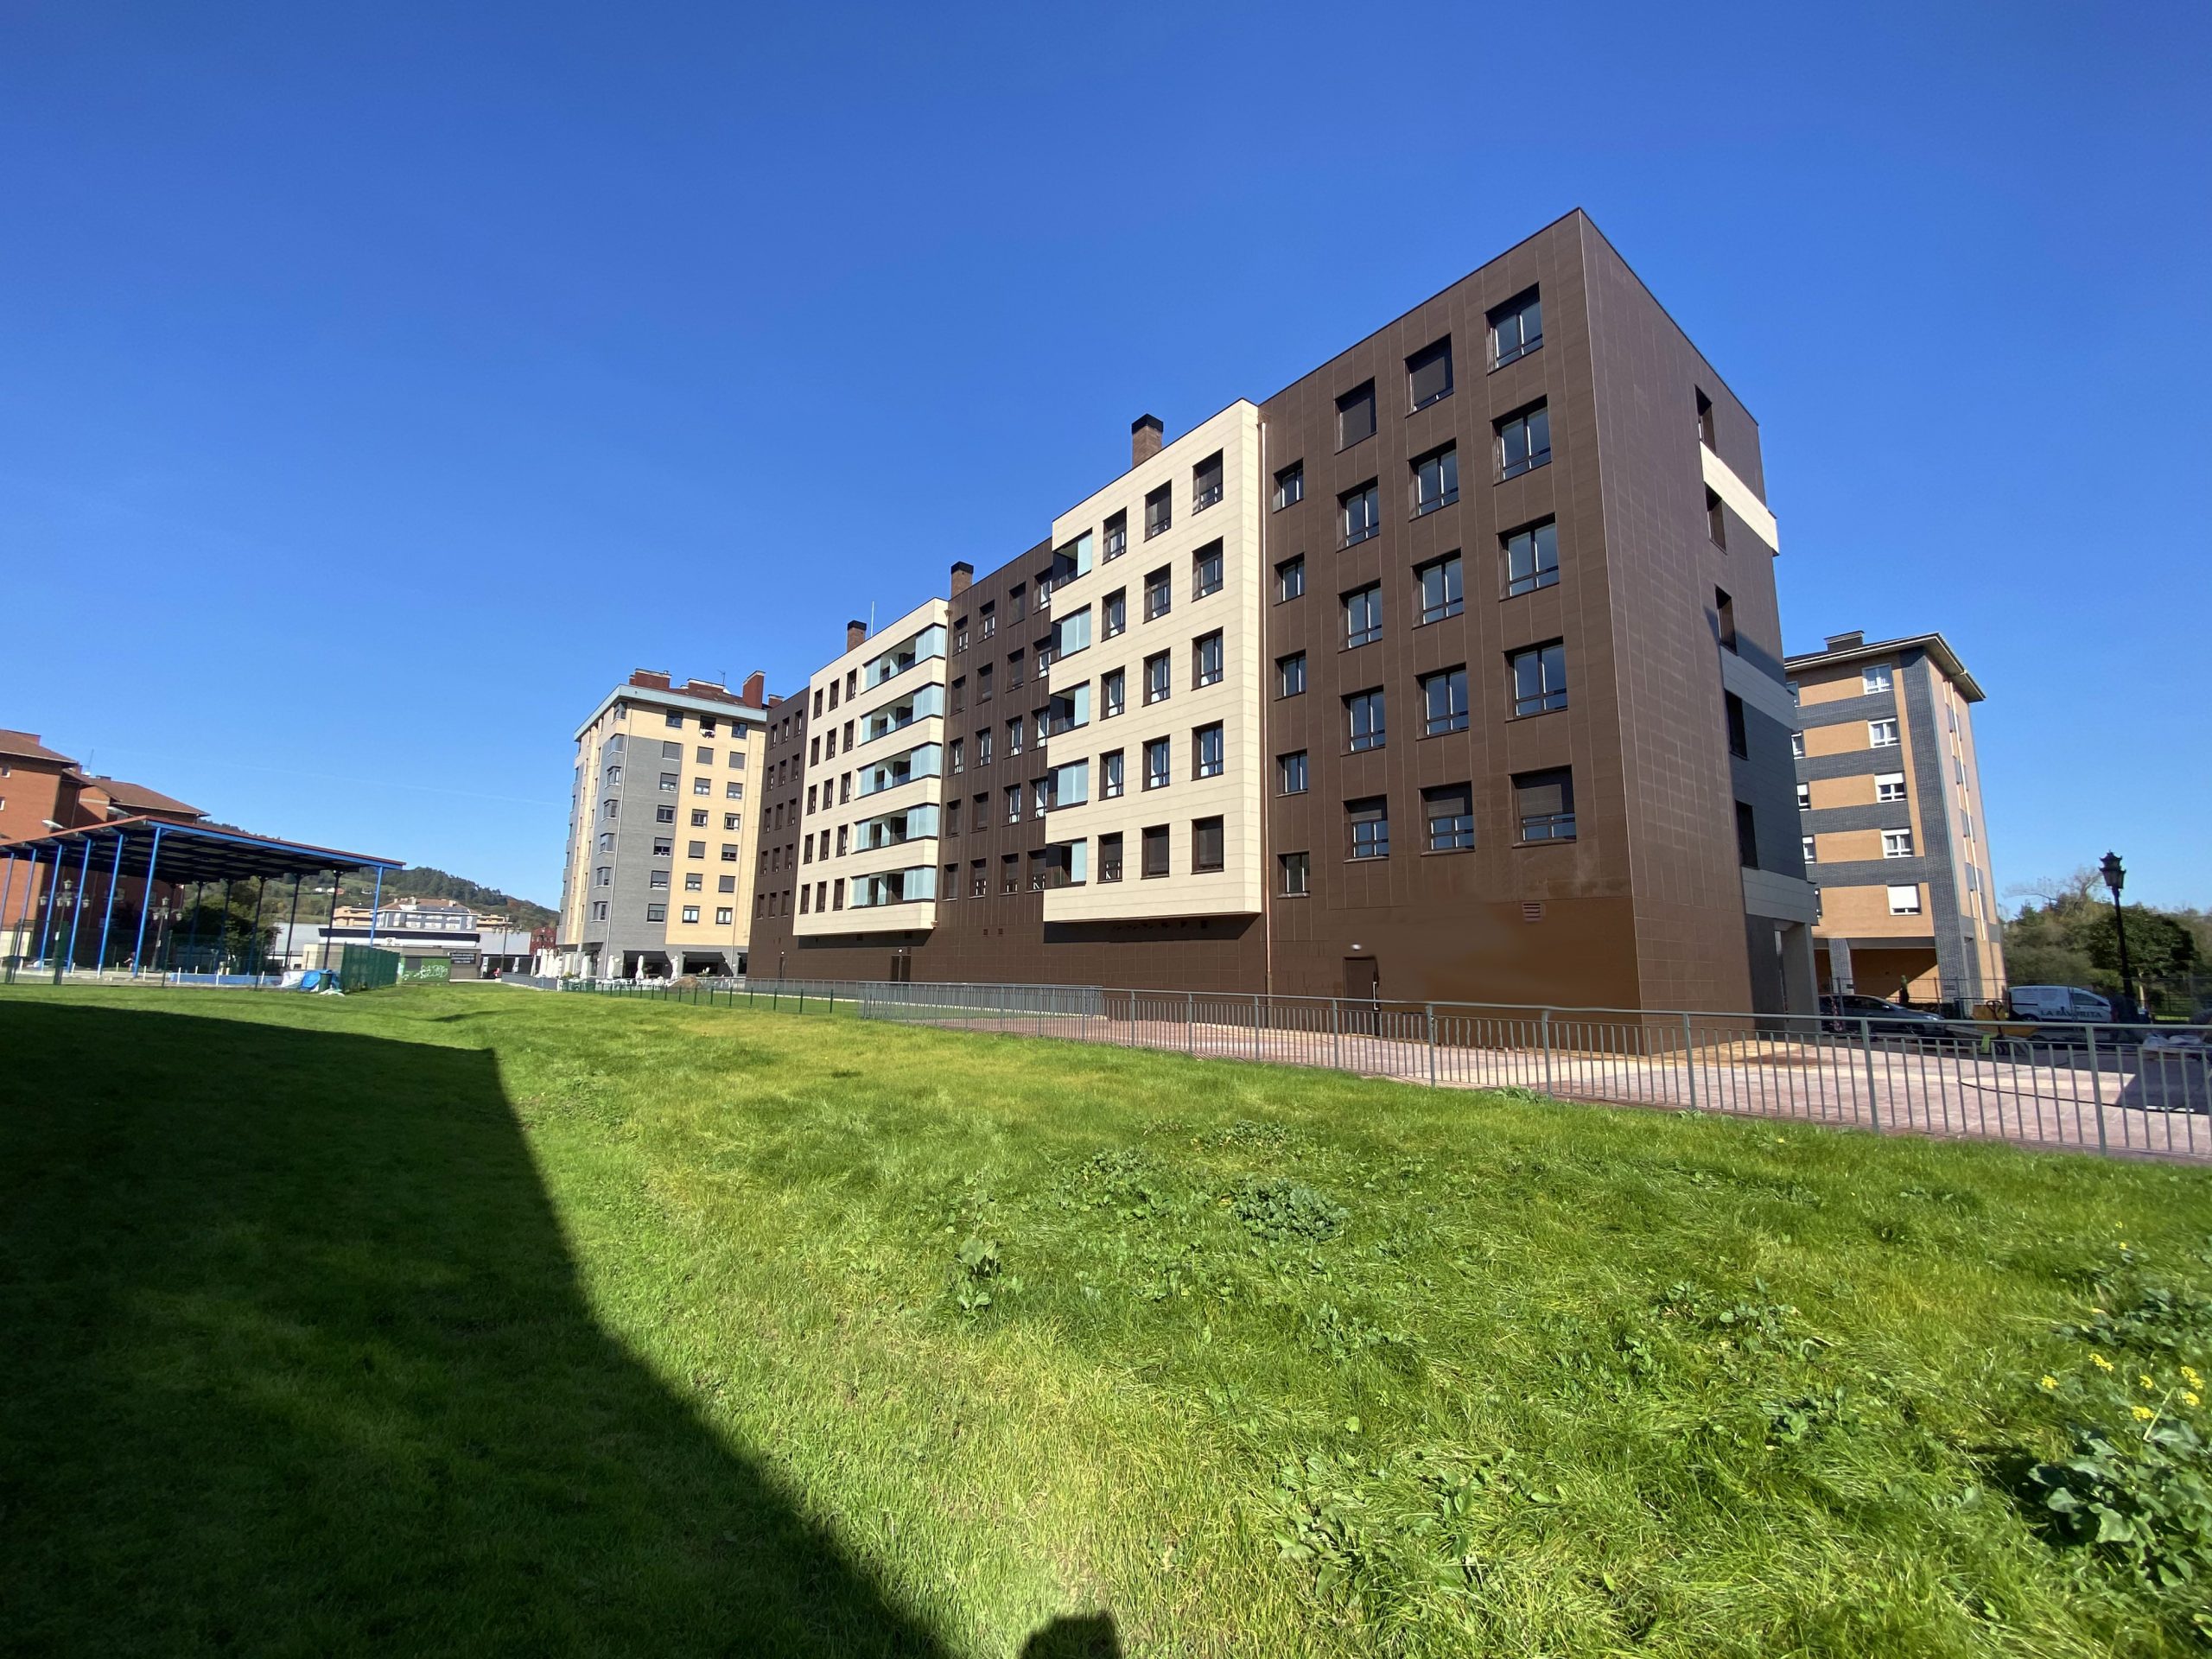 Víncula Residencial viviendas en la Corredoria Oviedo